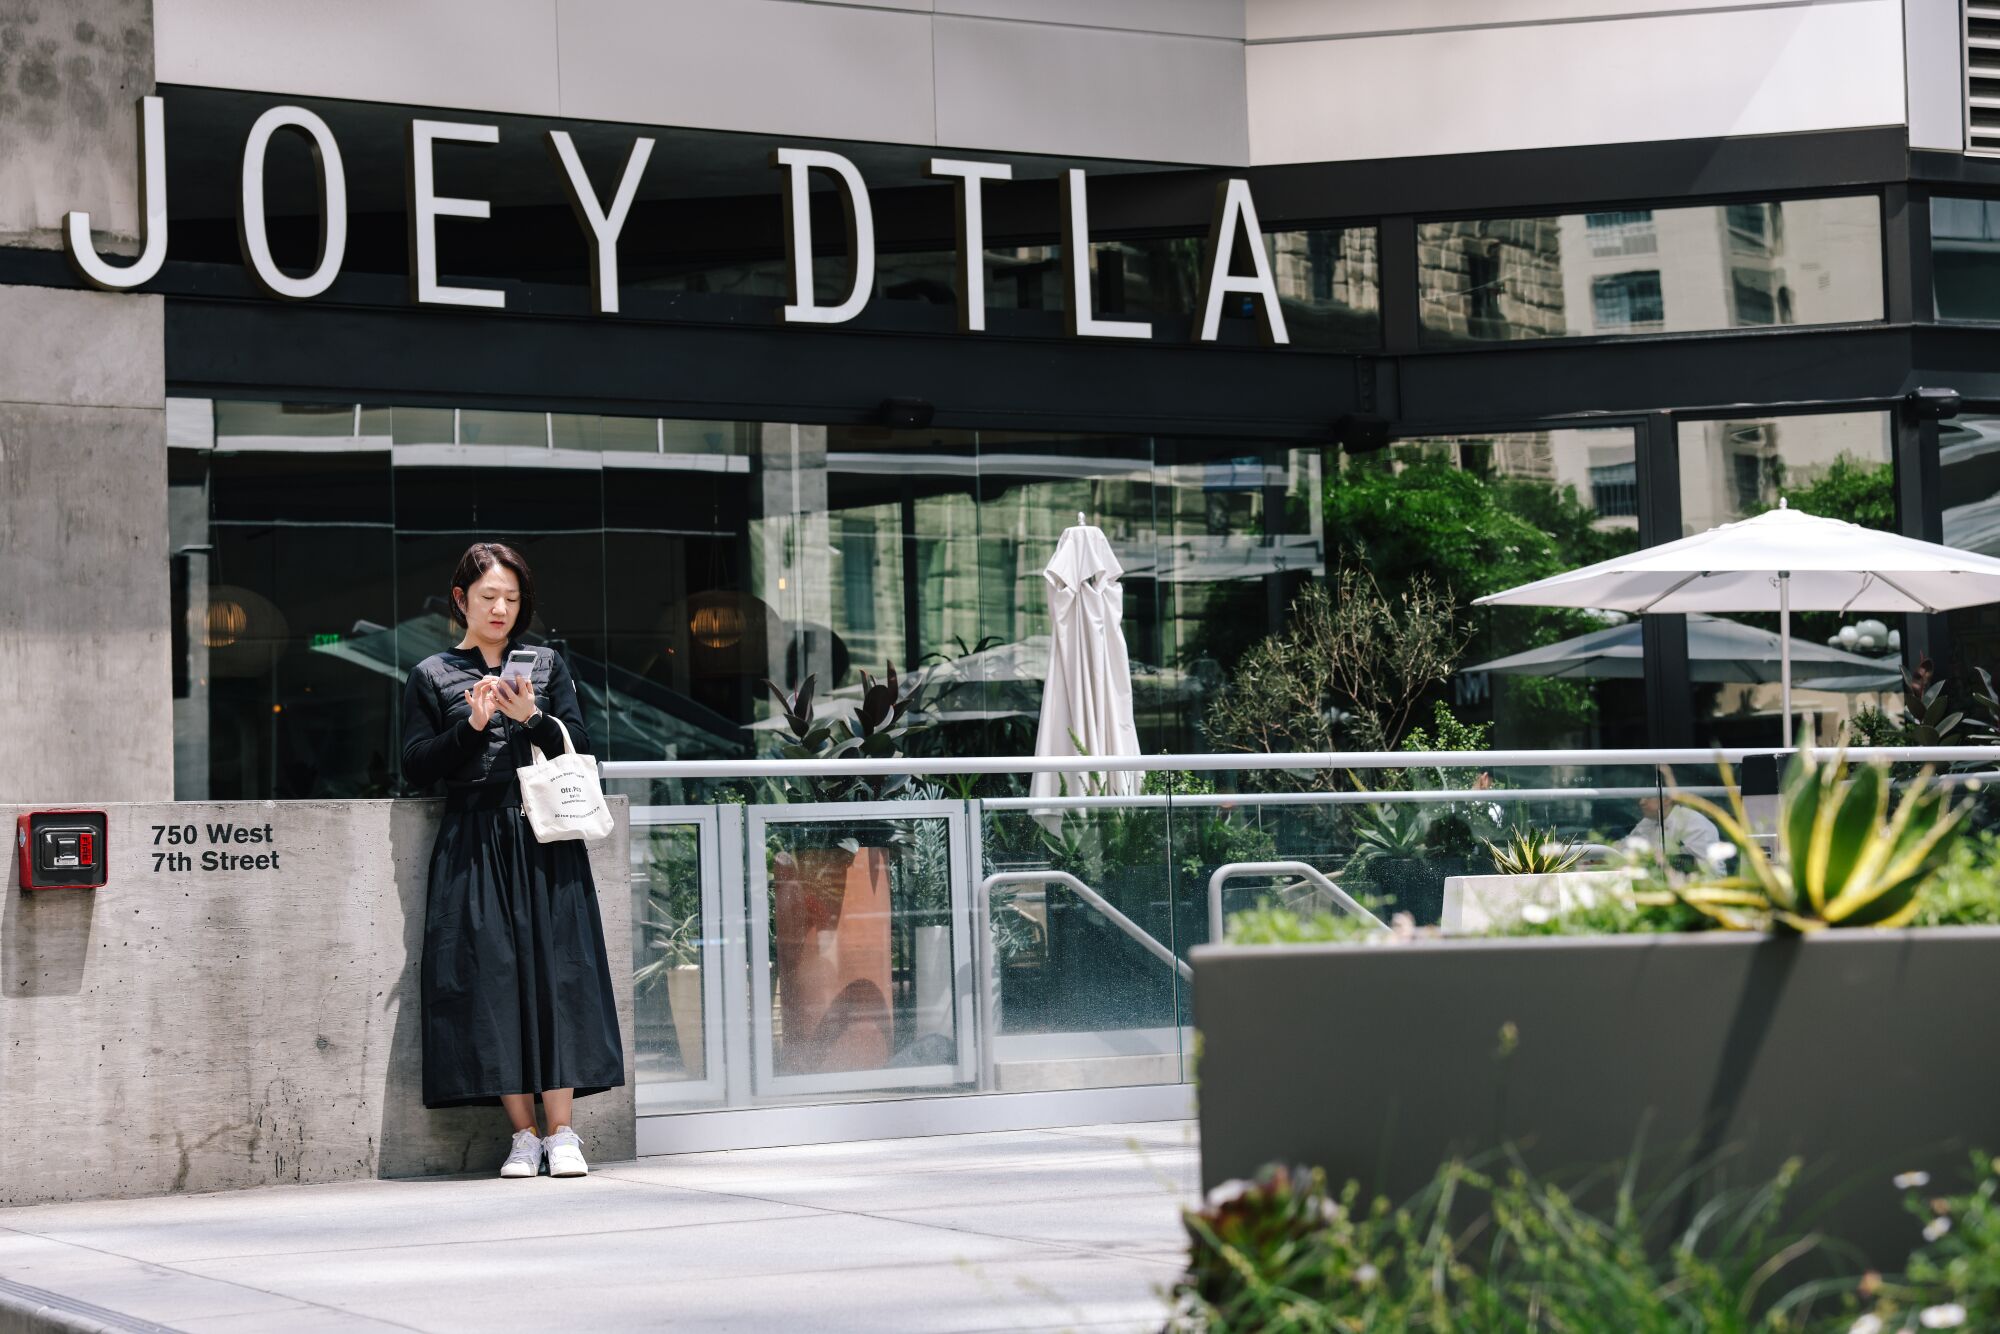 Una mujer frente al restaurante Joey DTLA en el distrito financiero del centro.